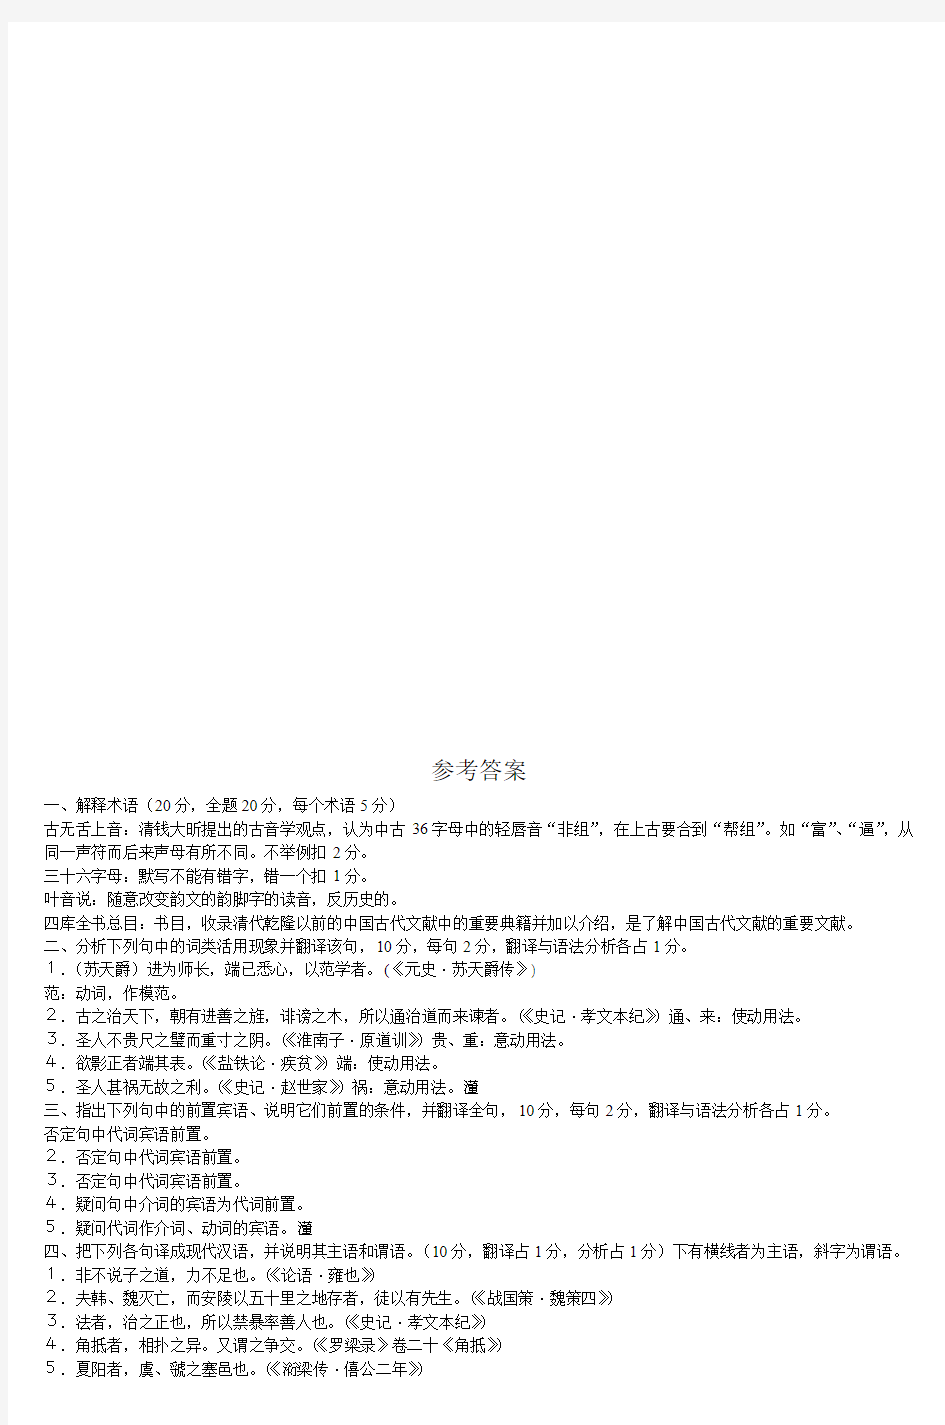 古代汉语试题(下)评分标准以及参考答案_2